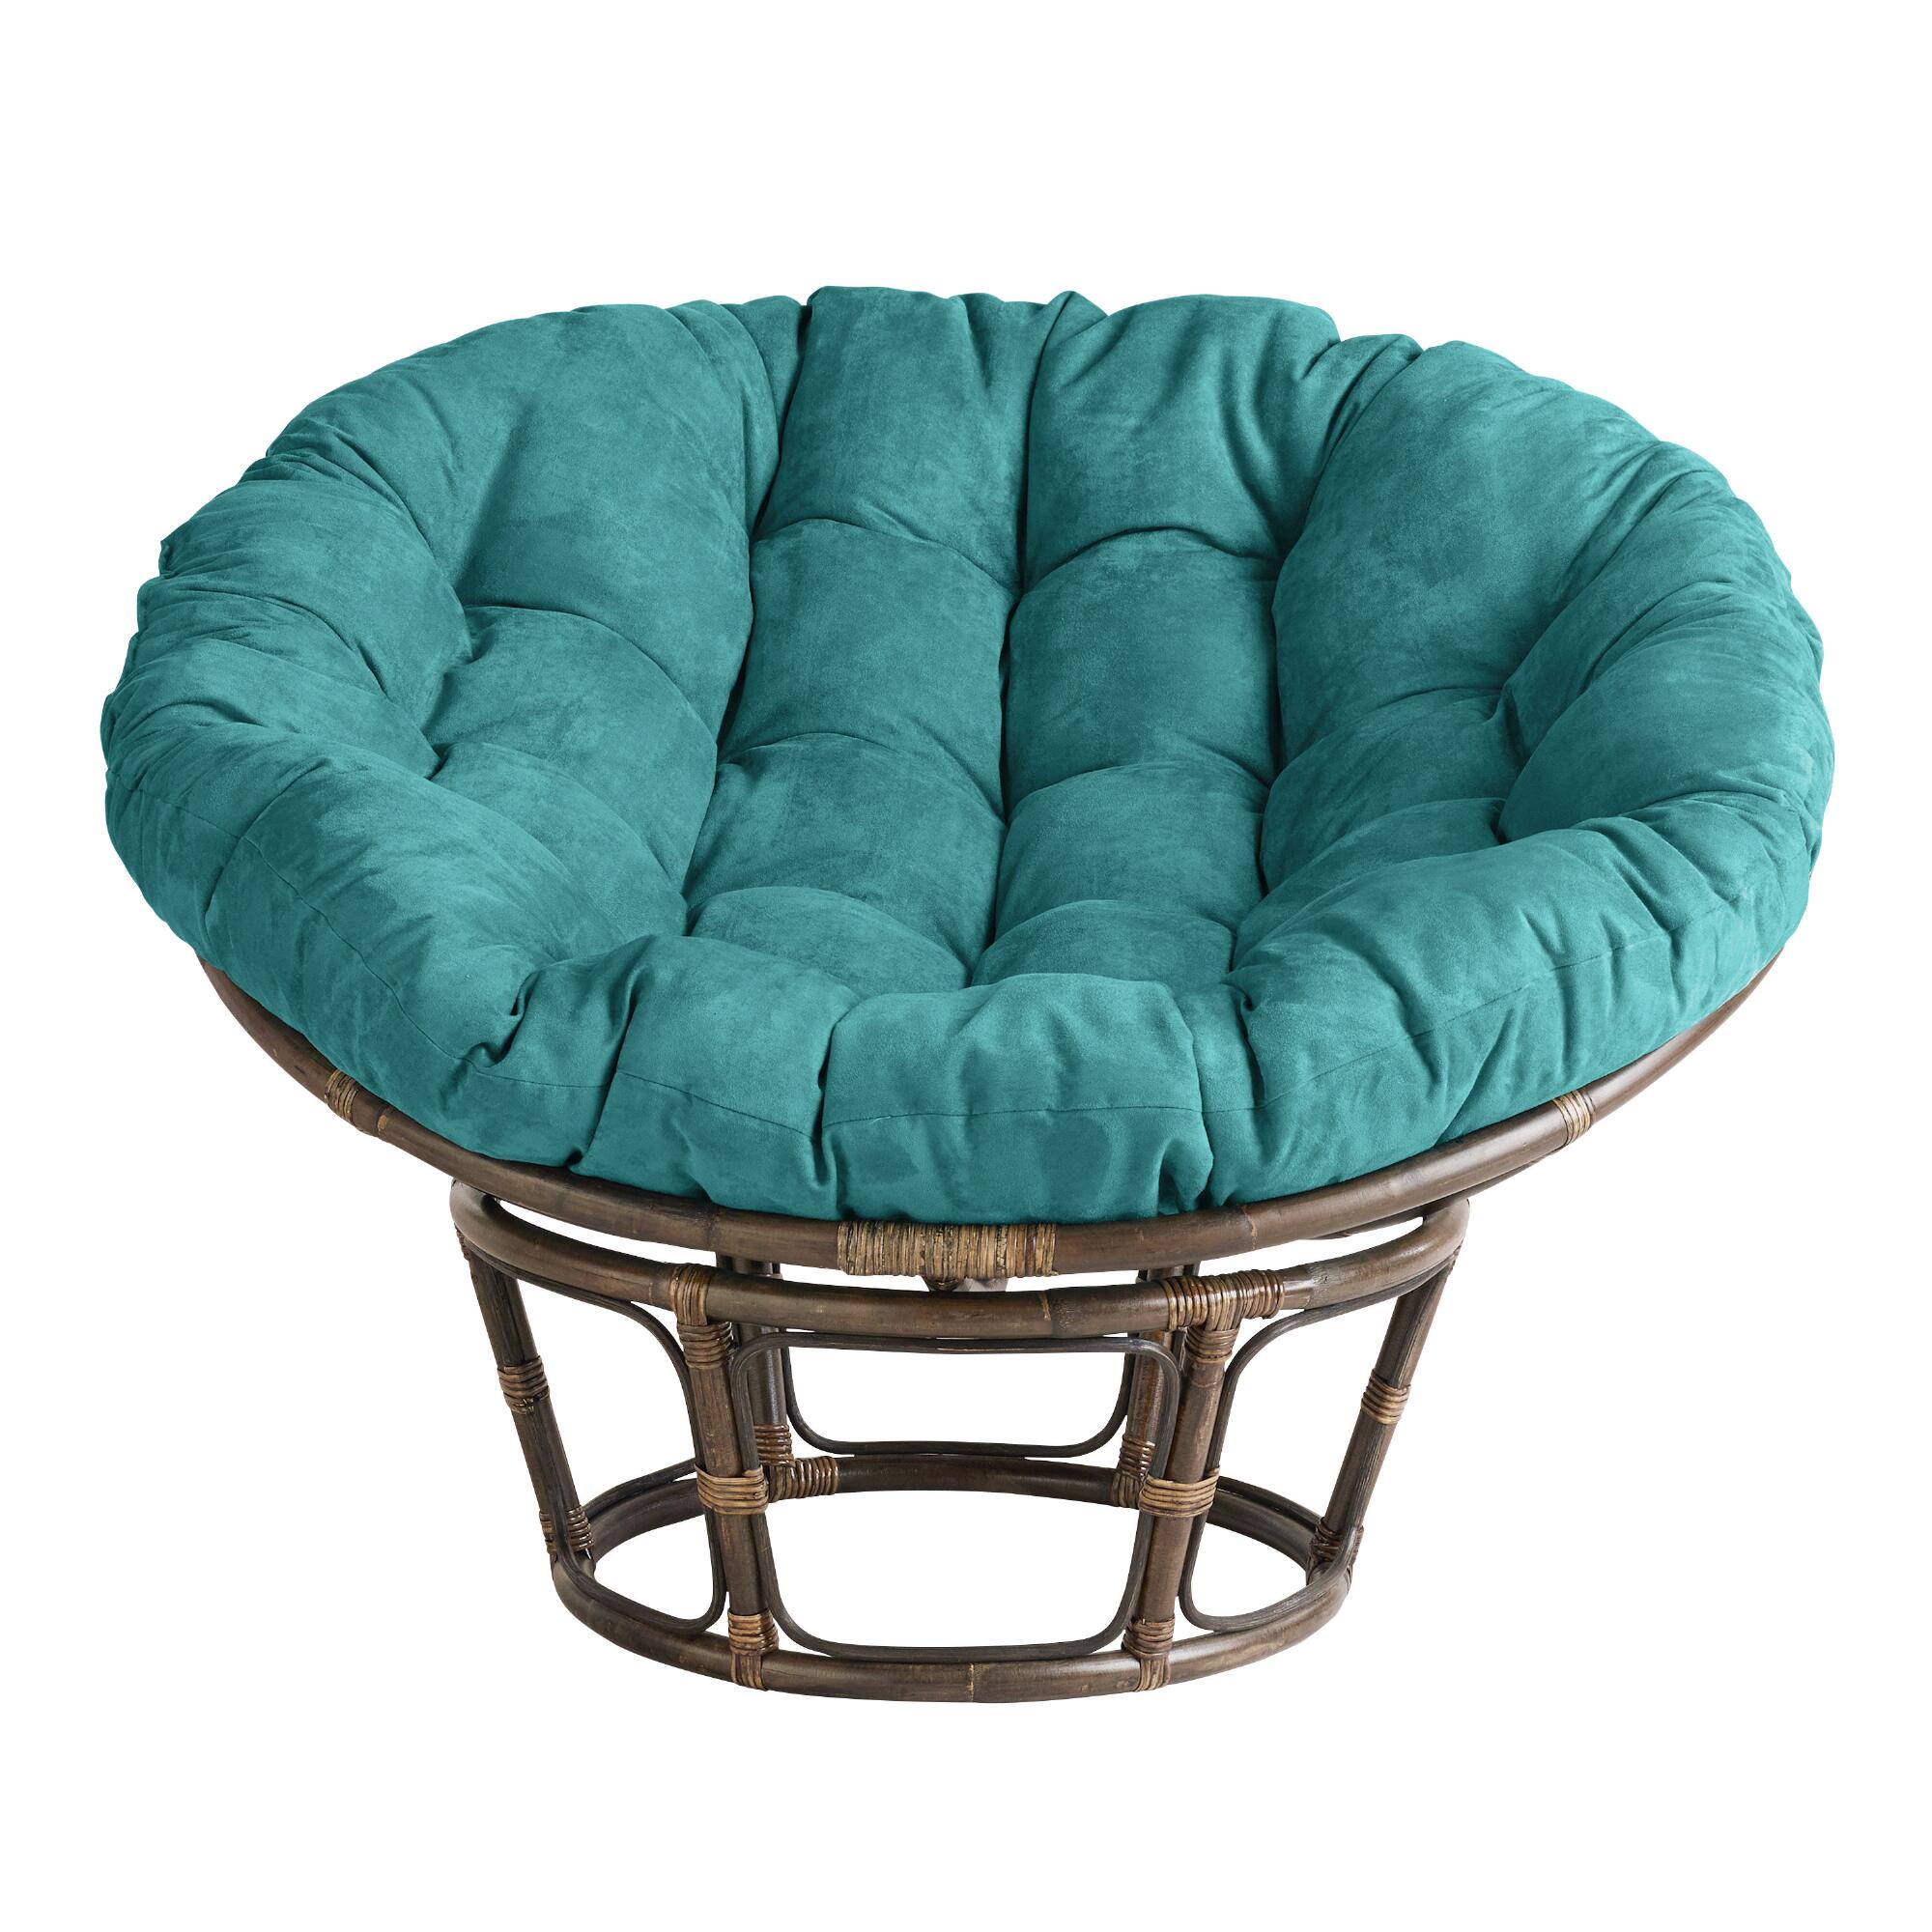 Teal Microsuede Papasan Chair Cushion: Blue - Microfiber by World Market